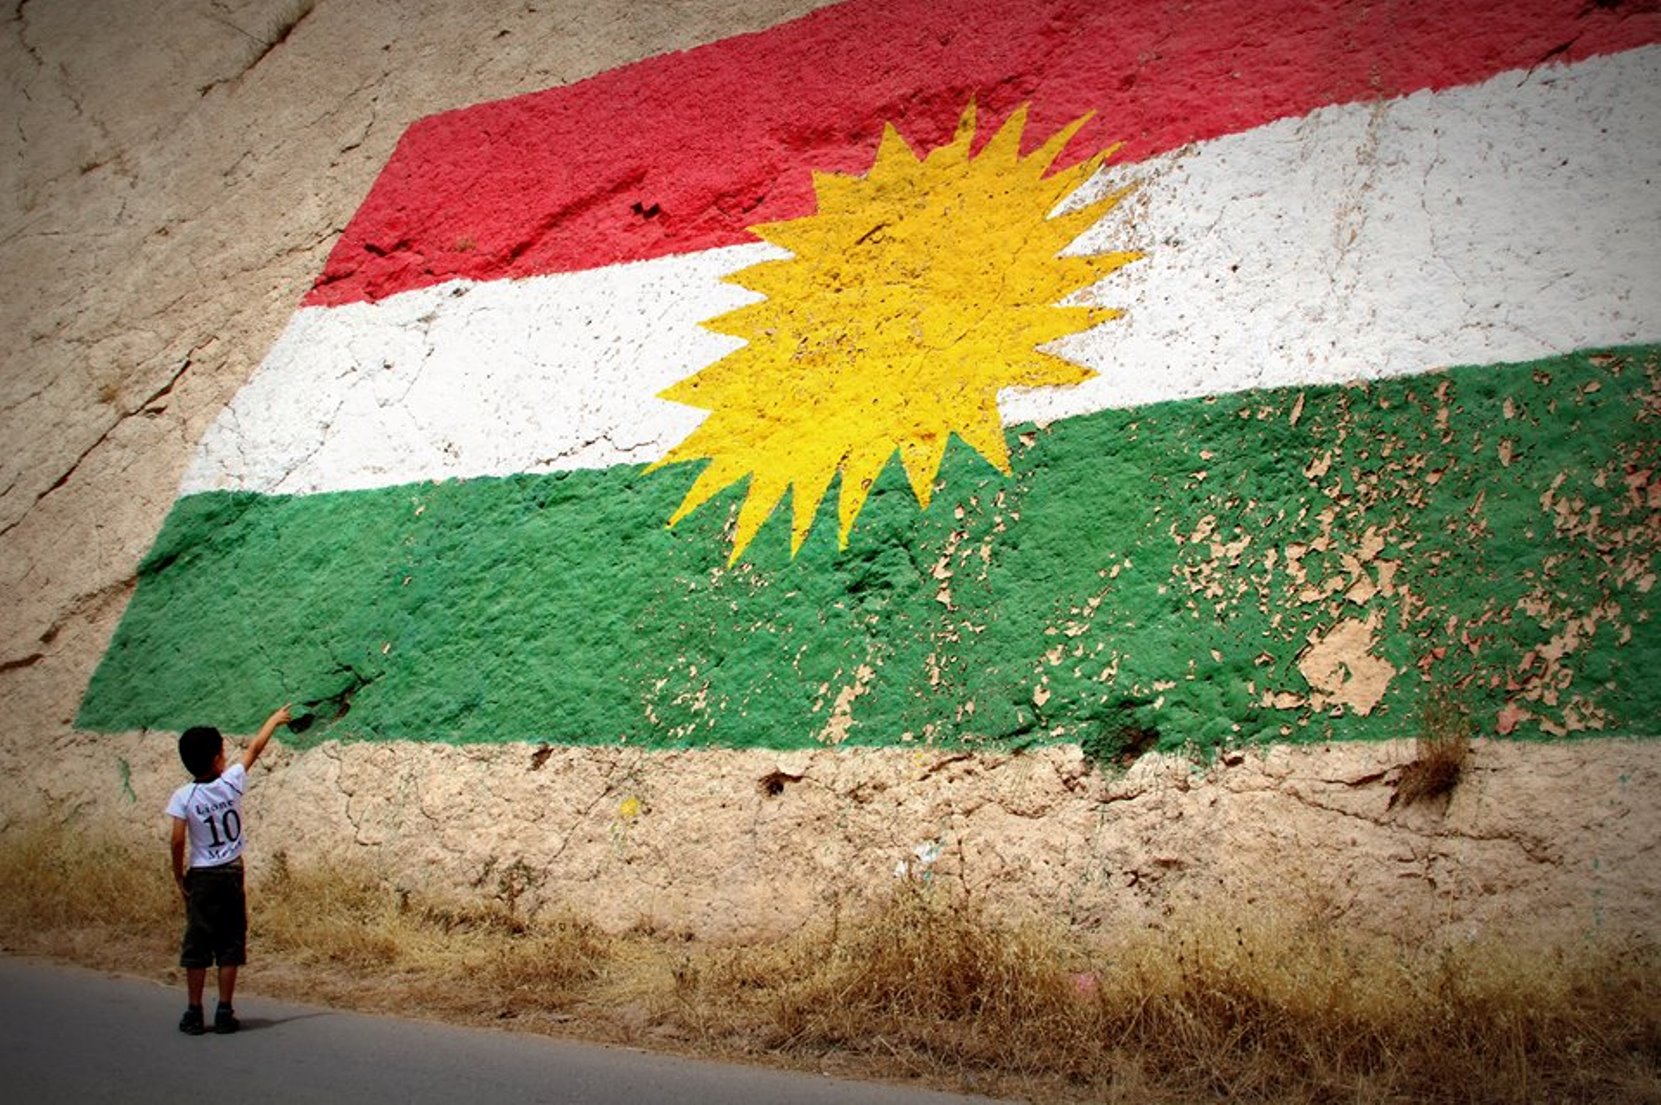 Riconoscere i diritti fondamentali del popolo curdo e promuovere un processo di pace in Turchia e nel Medio oriente – di Silvana Barbieri e Rosella Simone